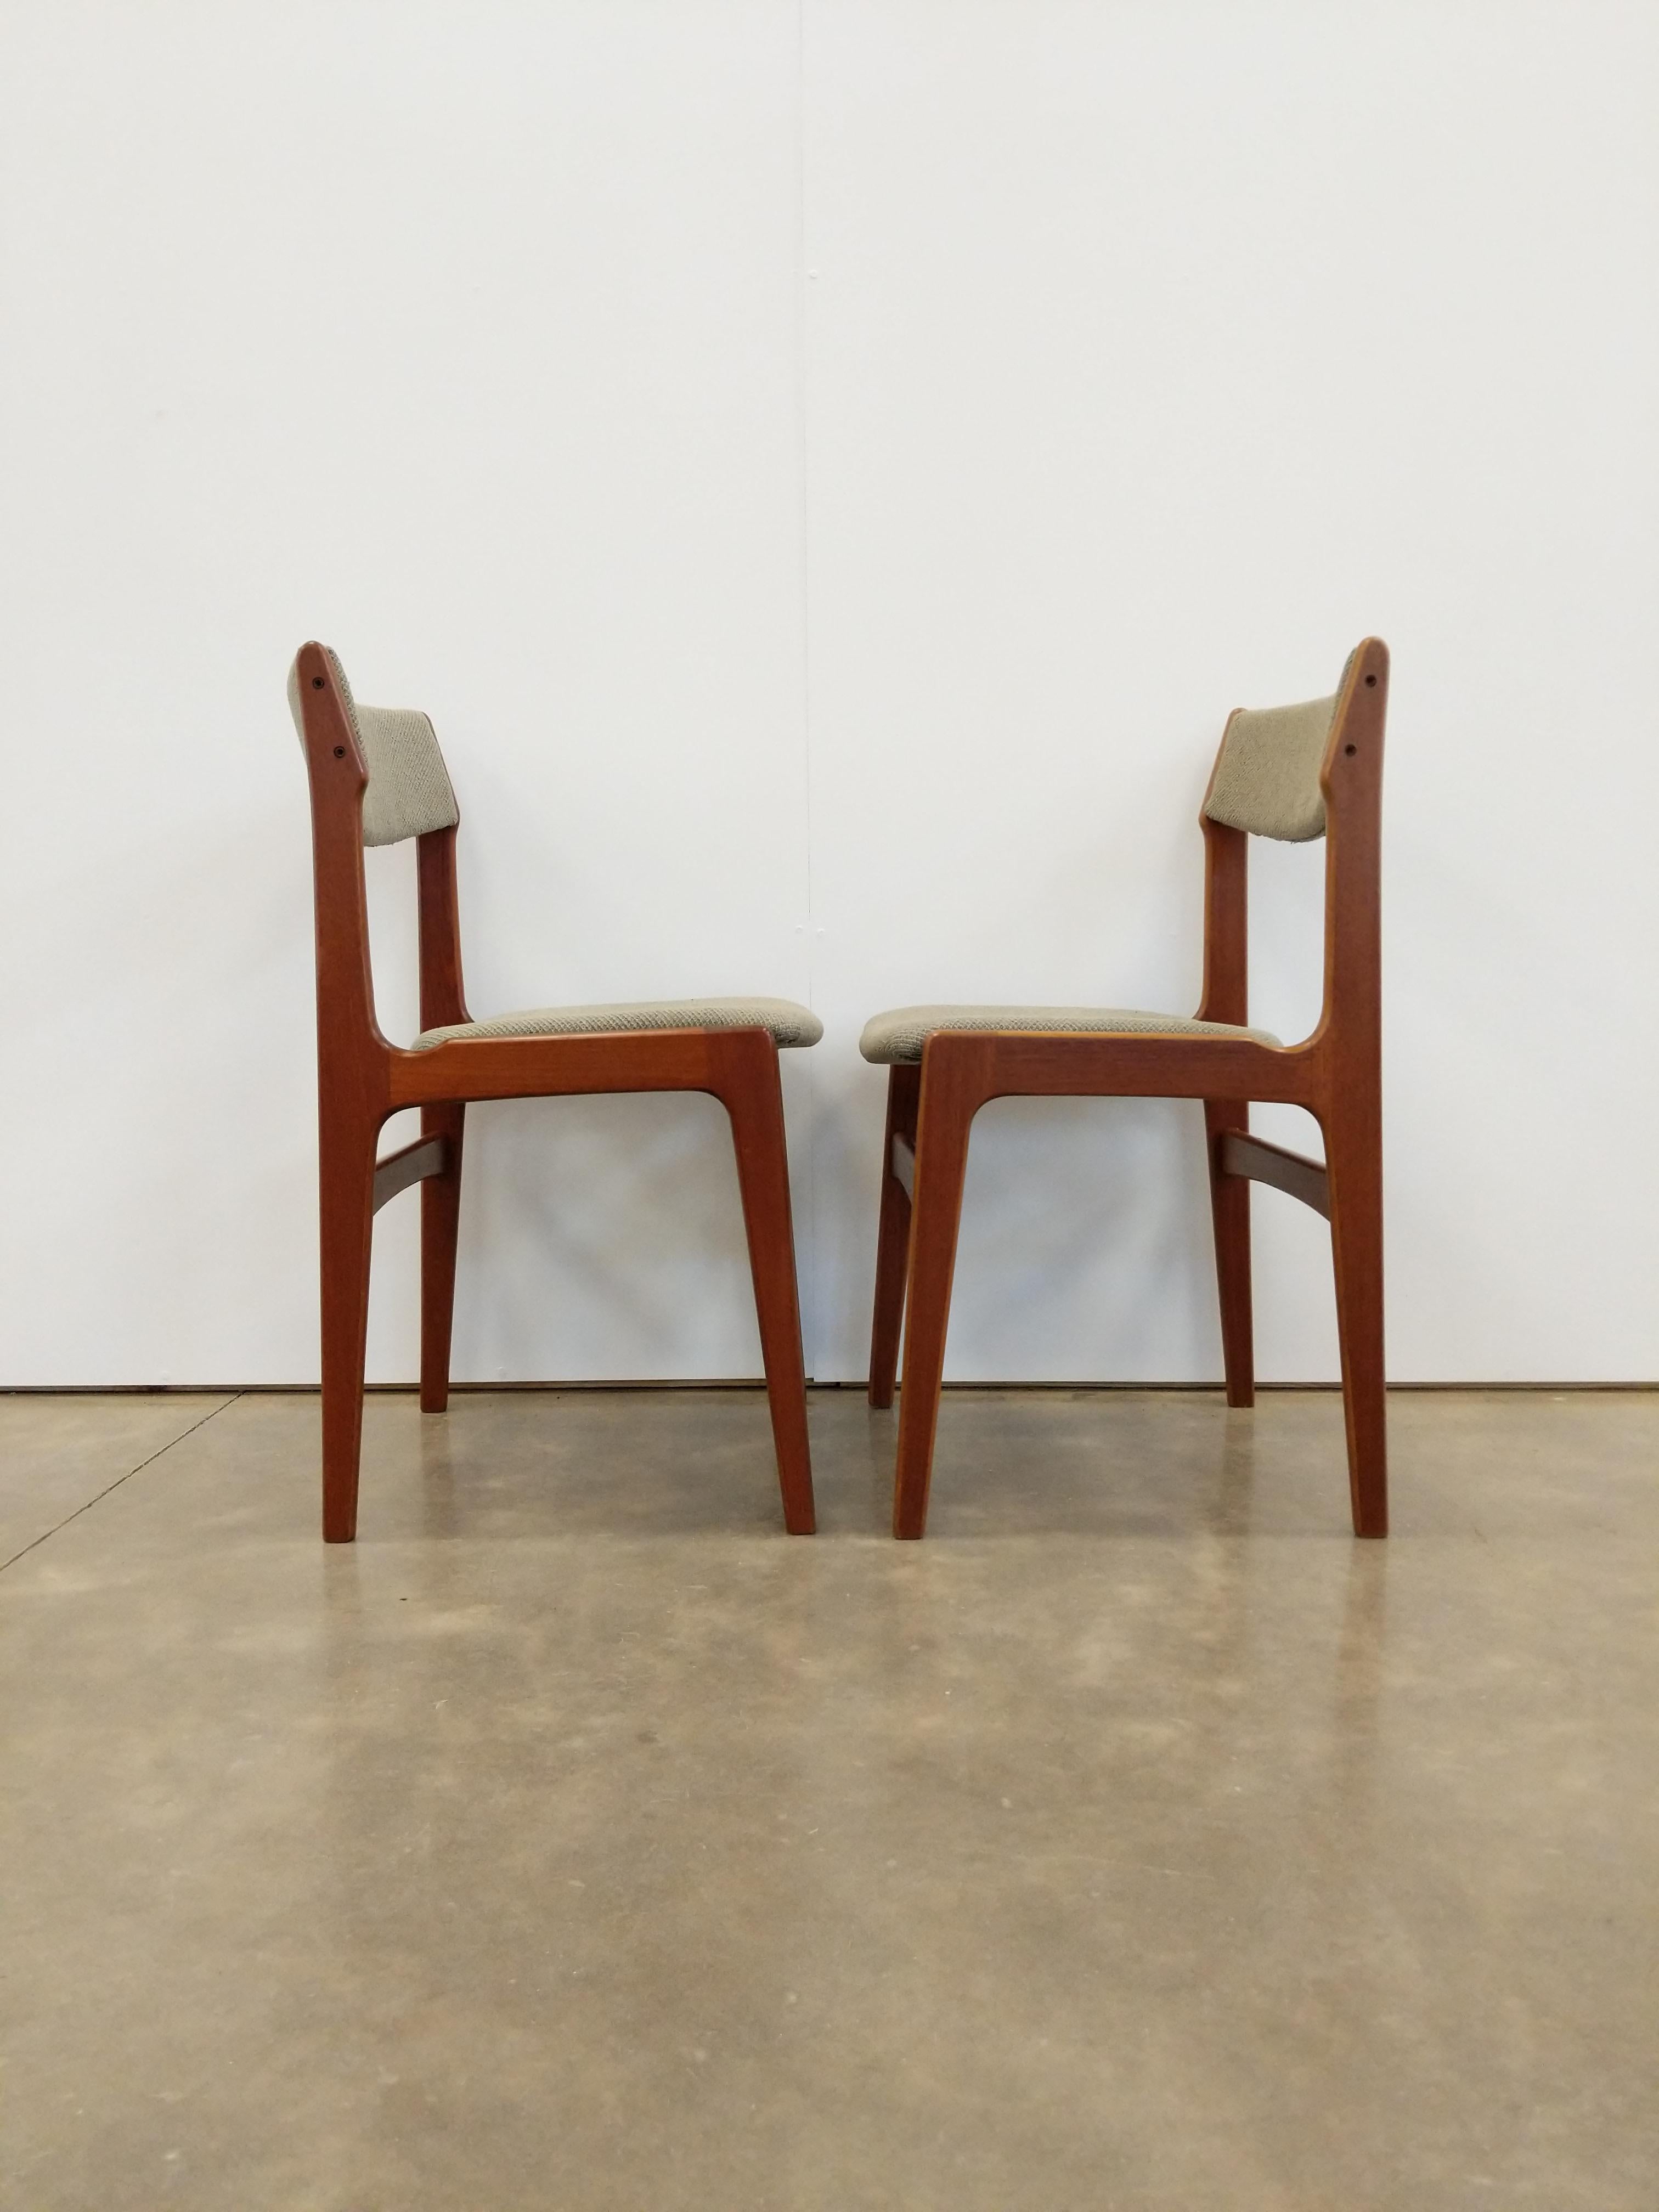 Ein Paar authentische dänische / skandinavische moderne Esszimmerstühle aus der Mitte des Jahrhunderts.

Entworfen von Erik Buch für Anderstrup Møbelfabrik.

Dieses Set ist in einem ausgezeichneten renovierten Zustand mit brandneuer Knoll-Polsterung